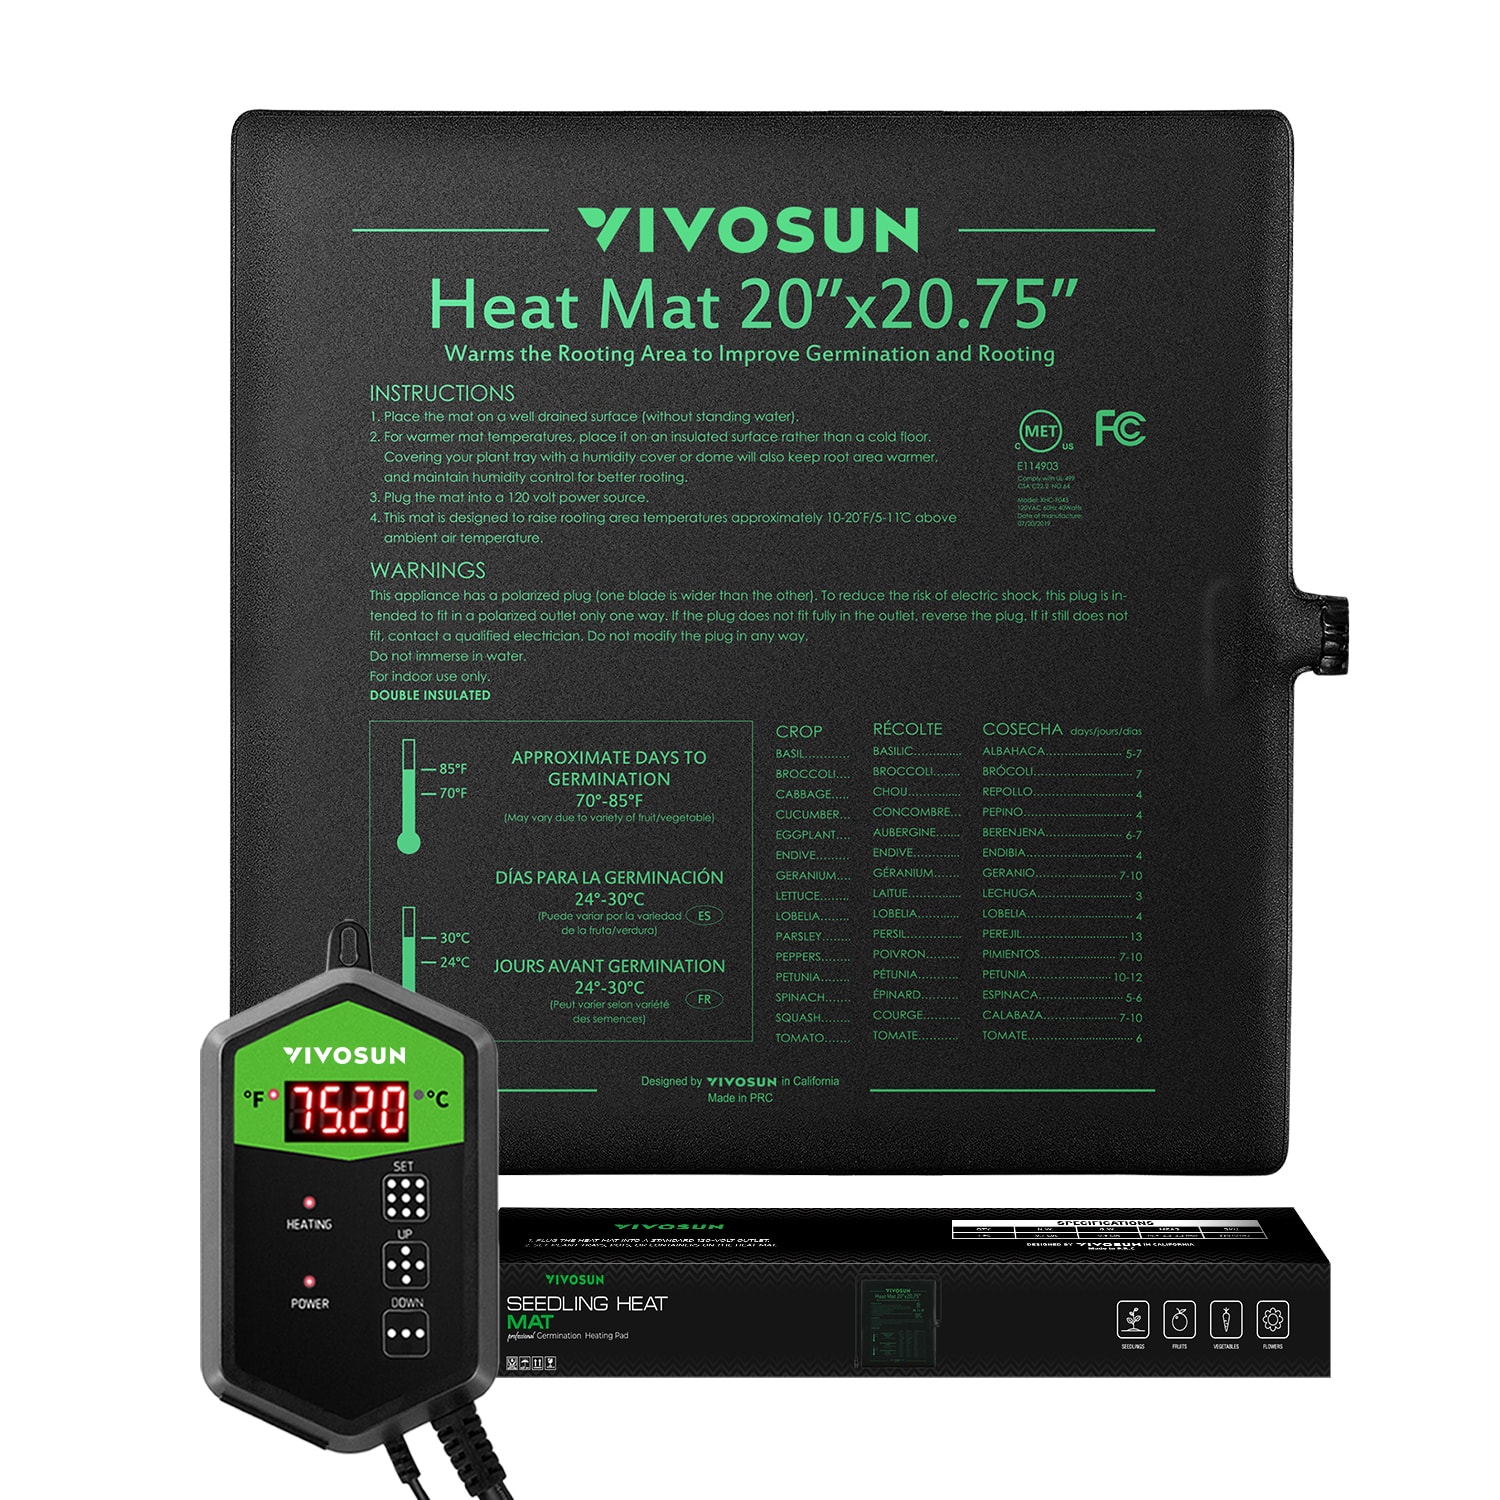 VIVOSUN Digital Thermostat: Should You Buy? - Mr. Amphibian